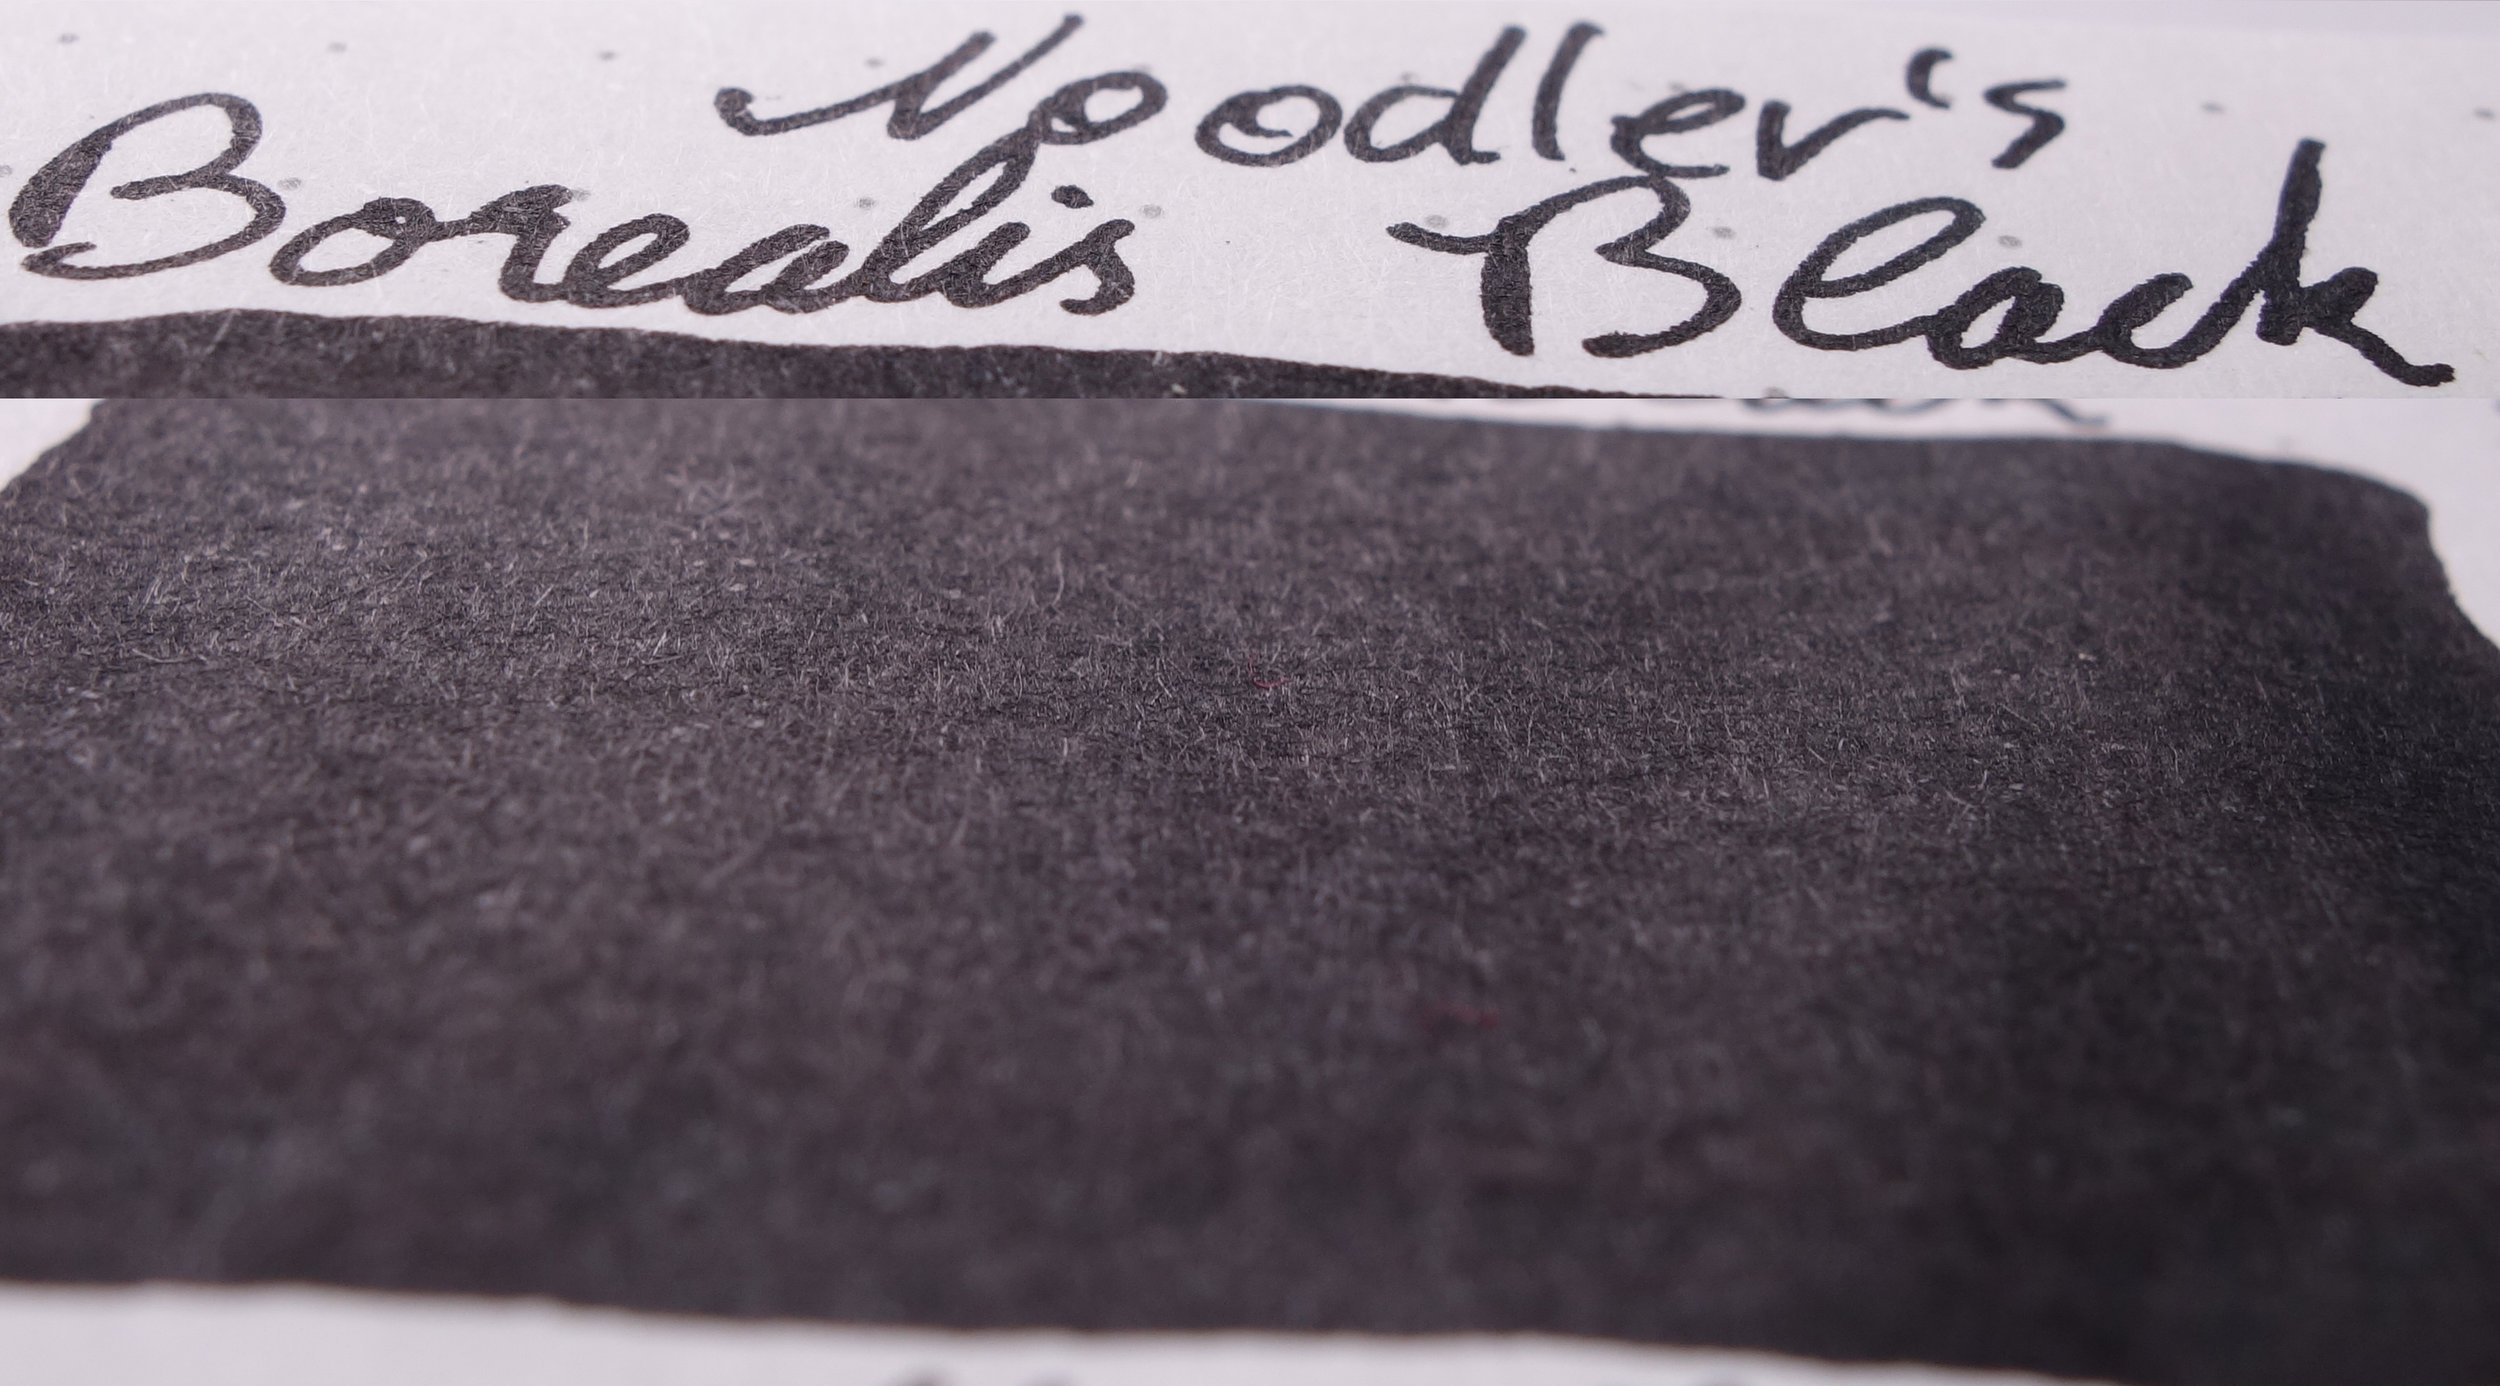 ink review: noodler's black revisited - Seize the Dave